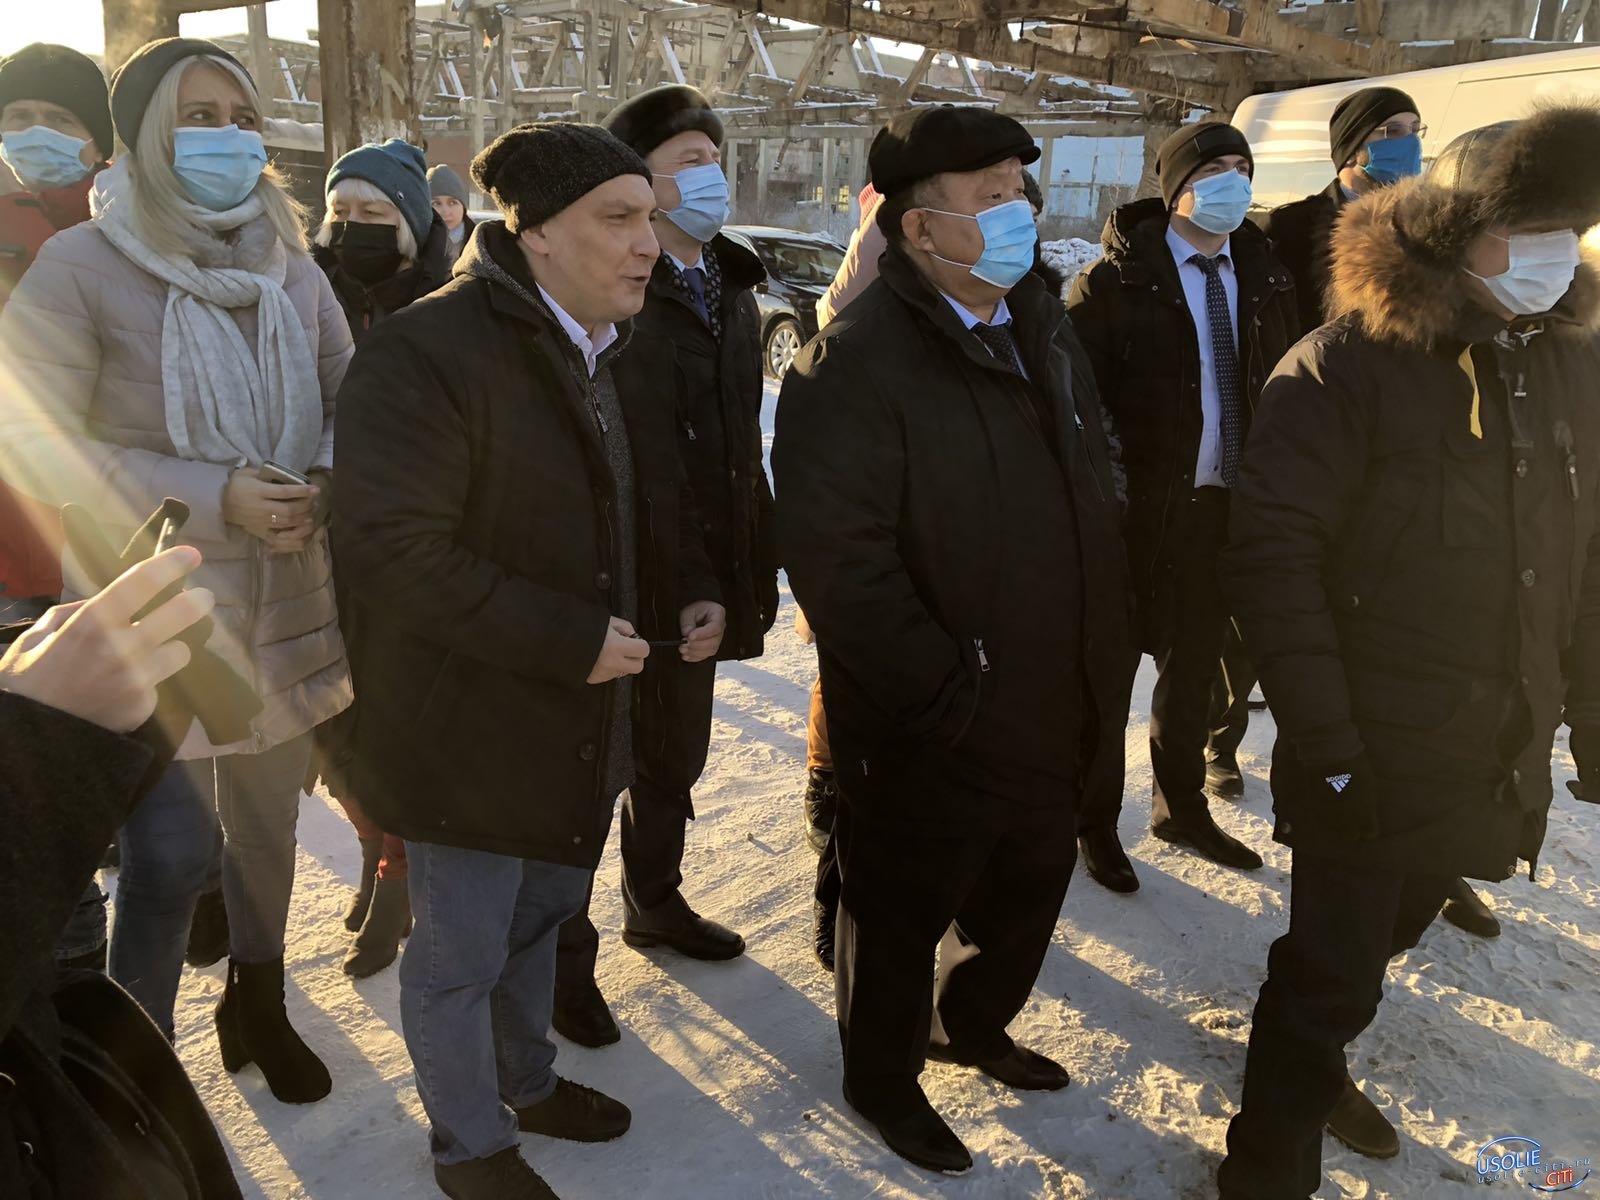 Мэр Усолья: И снова на Химпроме большая делегация